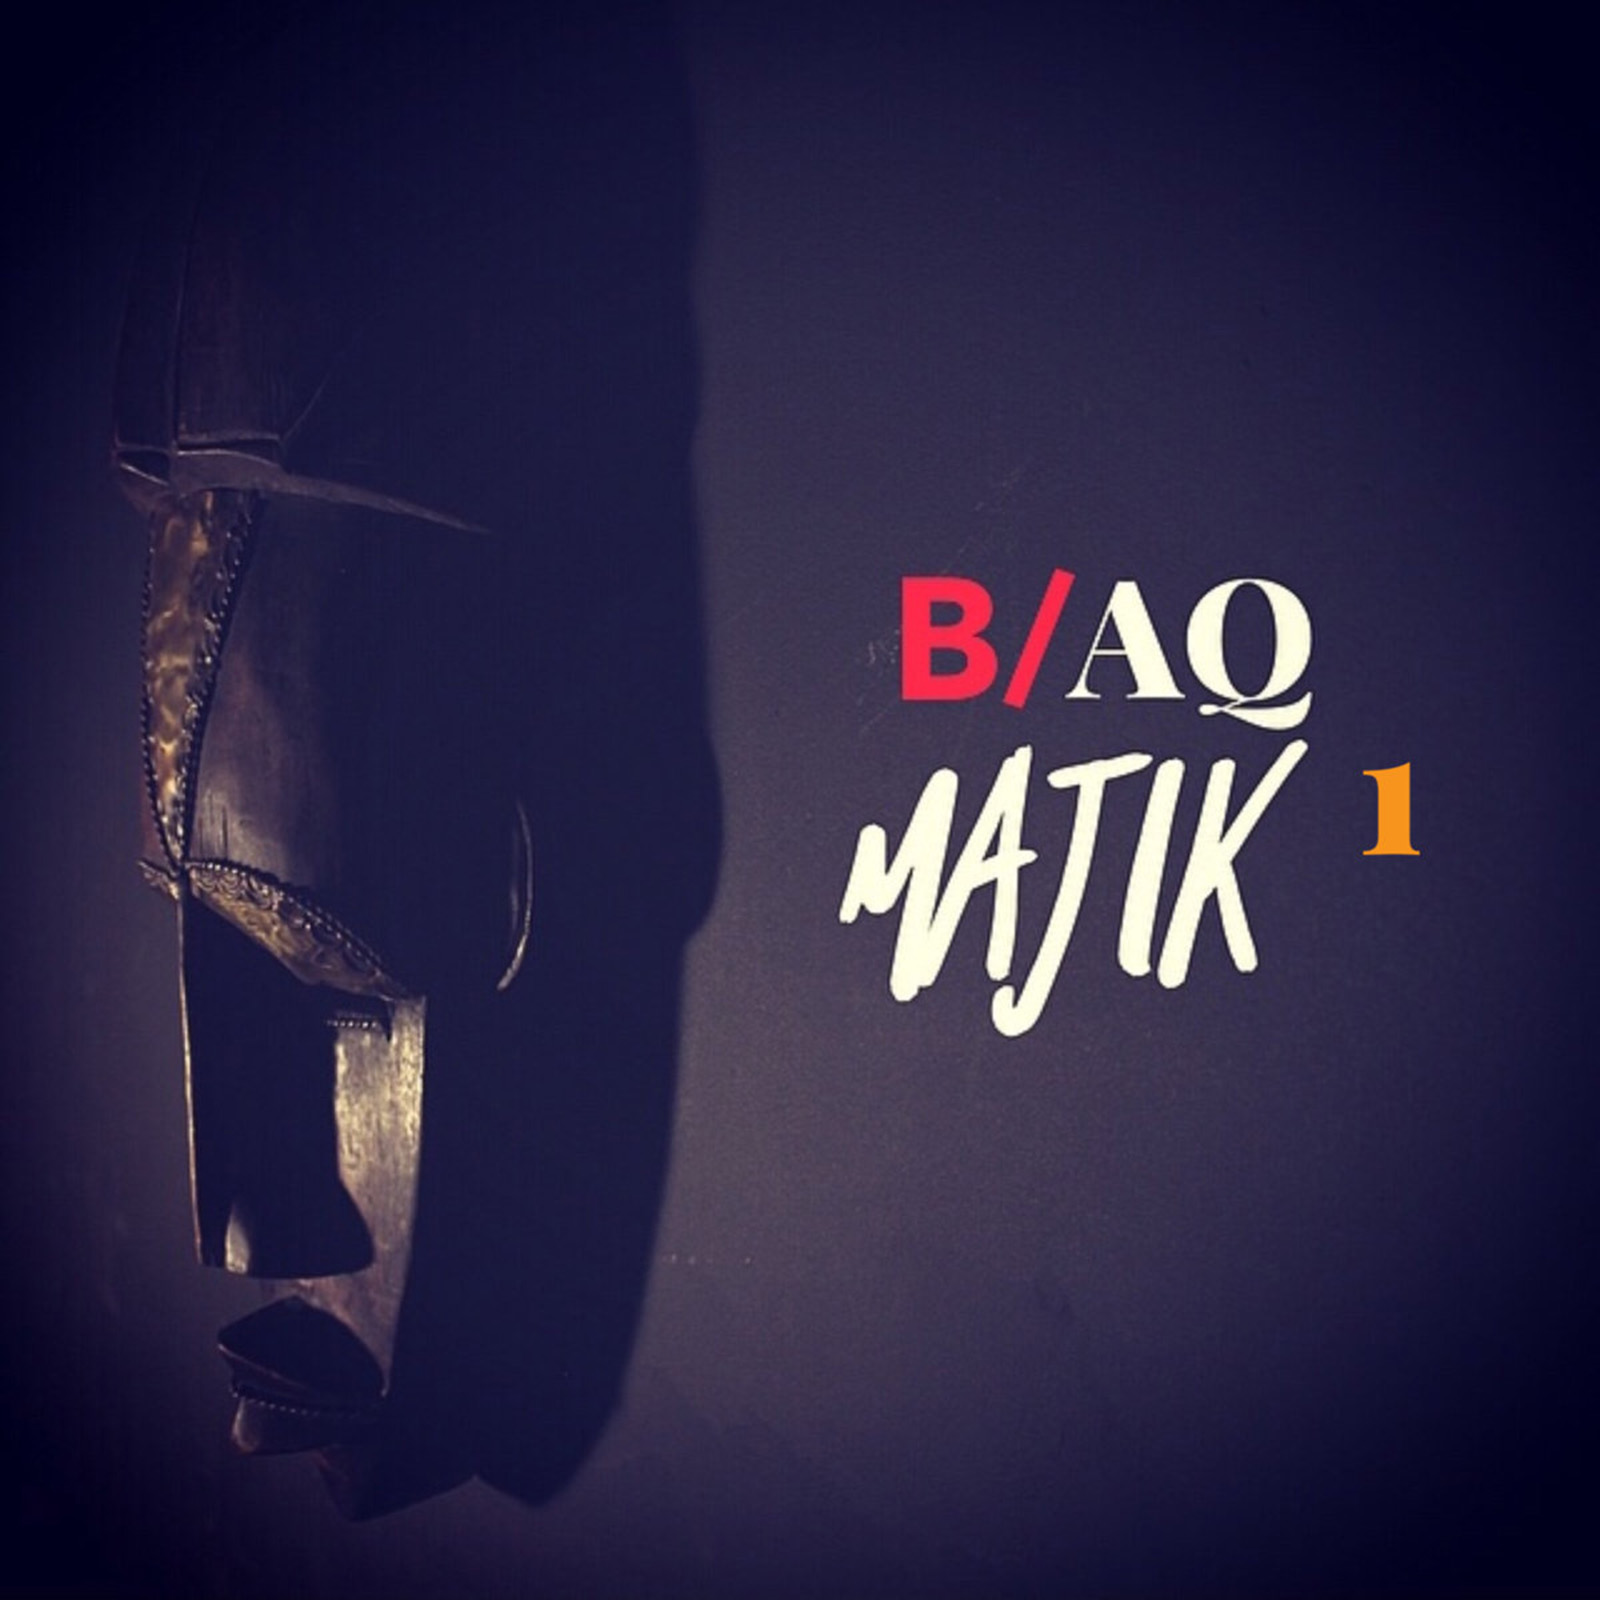 B​/​aQ Majik 1 by O'hene Savánt